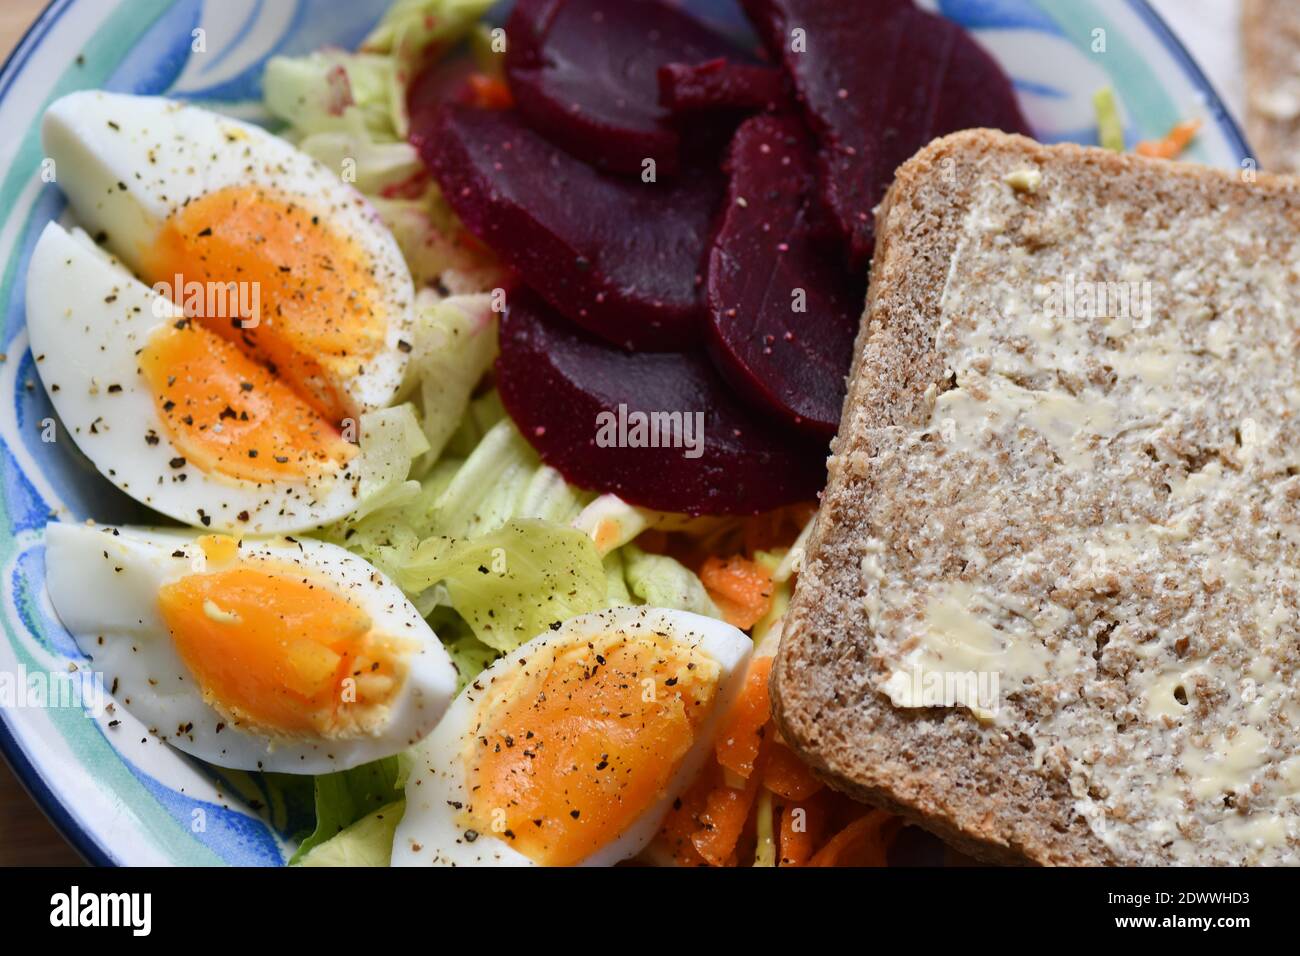 Ein farbenfrohes, leichtes Mittagessen mit gekochtem Ei, Krautsalat, Salat und Rote Bete mit hausgemachtem Vollkornbrot. Stockfoto